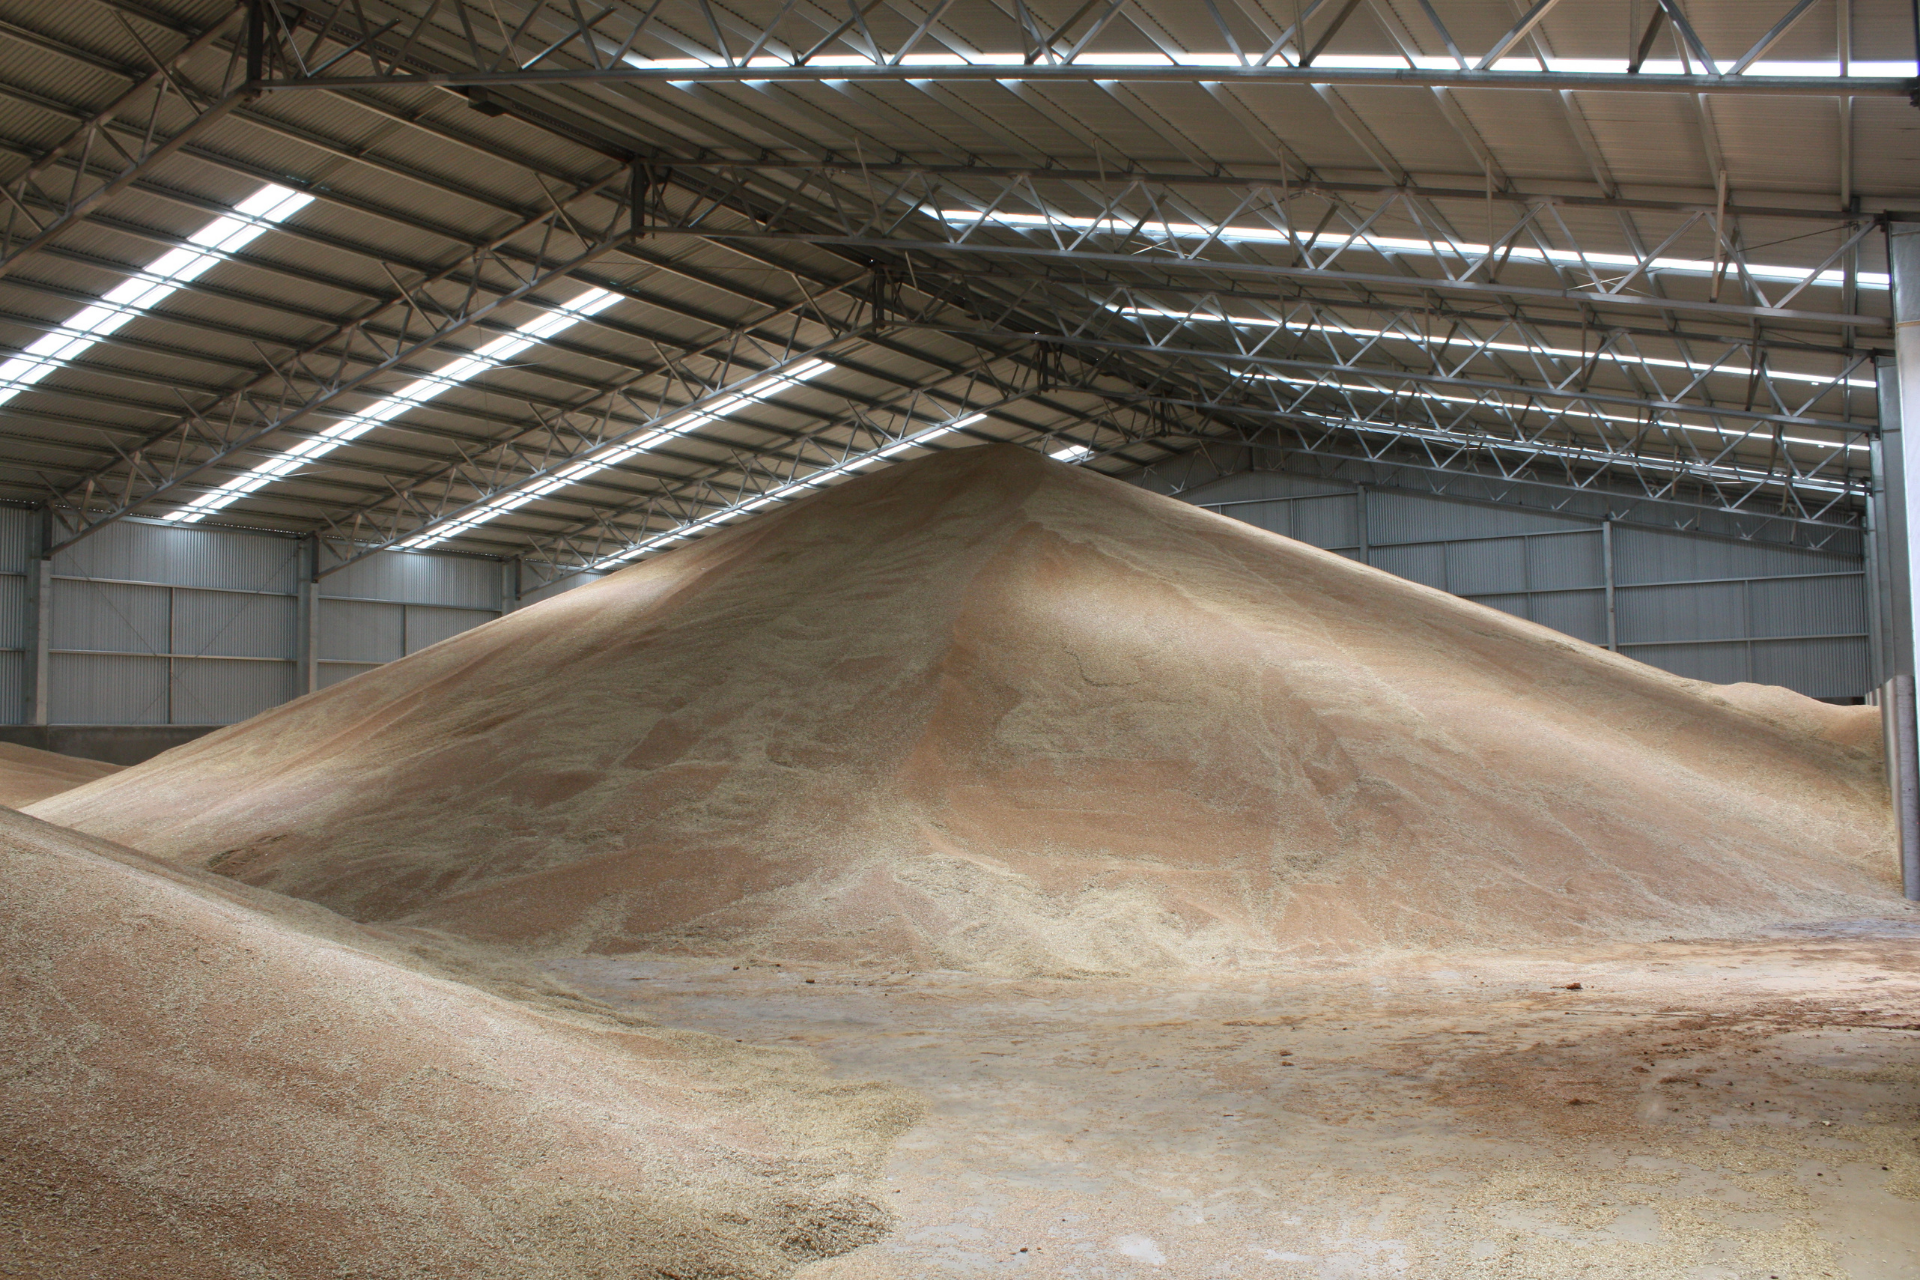 A 60m x 30m x 6m grain storage shed, Lismore VIC - internal